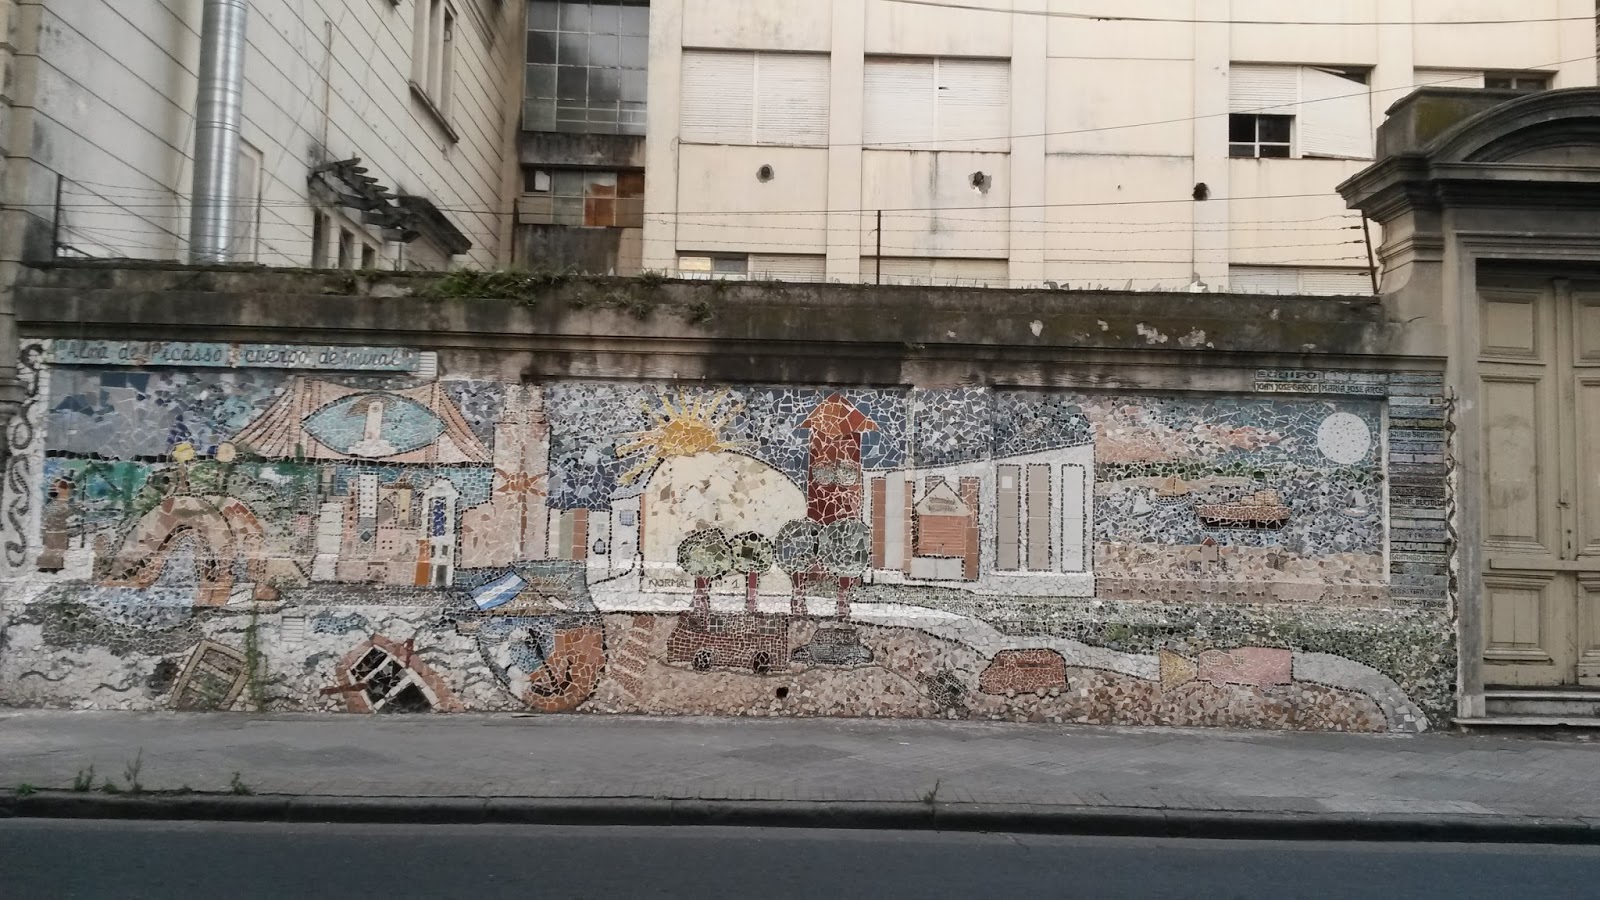 Alma de Picasso y cuerpo de mural, arte callejero, Rosario, Argentina, Elisa N, Blog de Viajes, Lifestyle, Travel